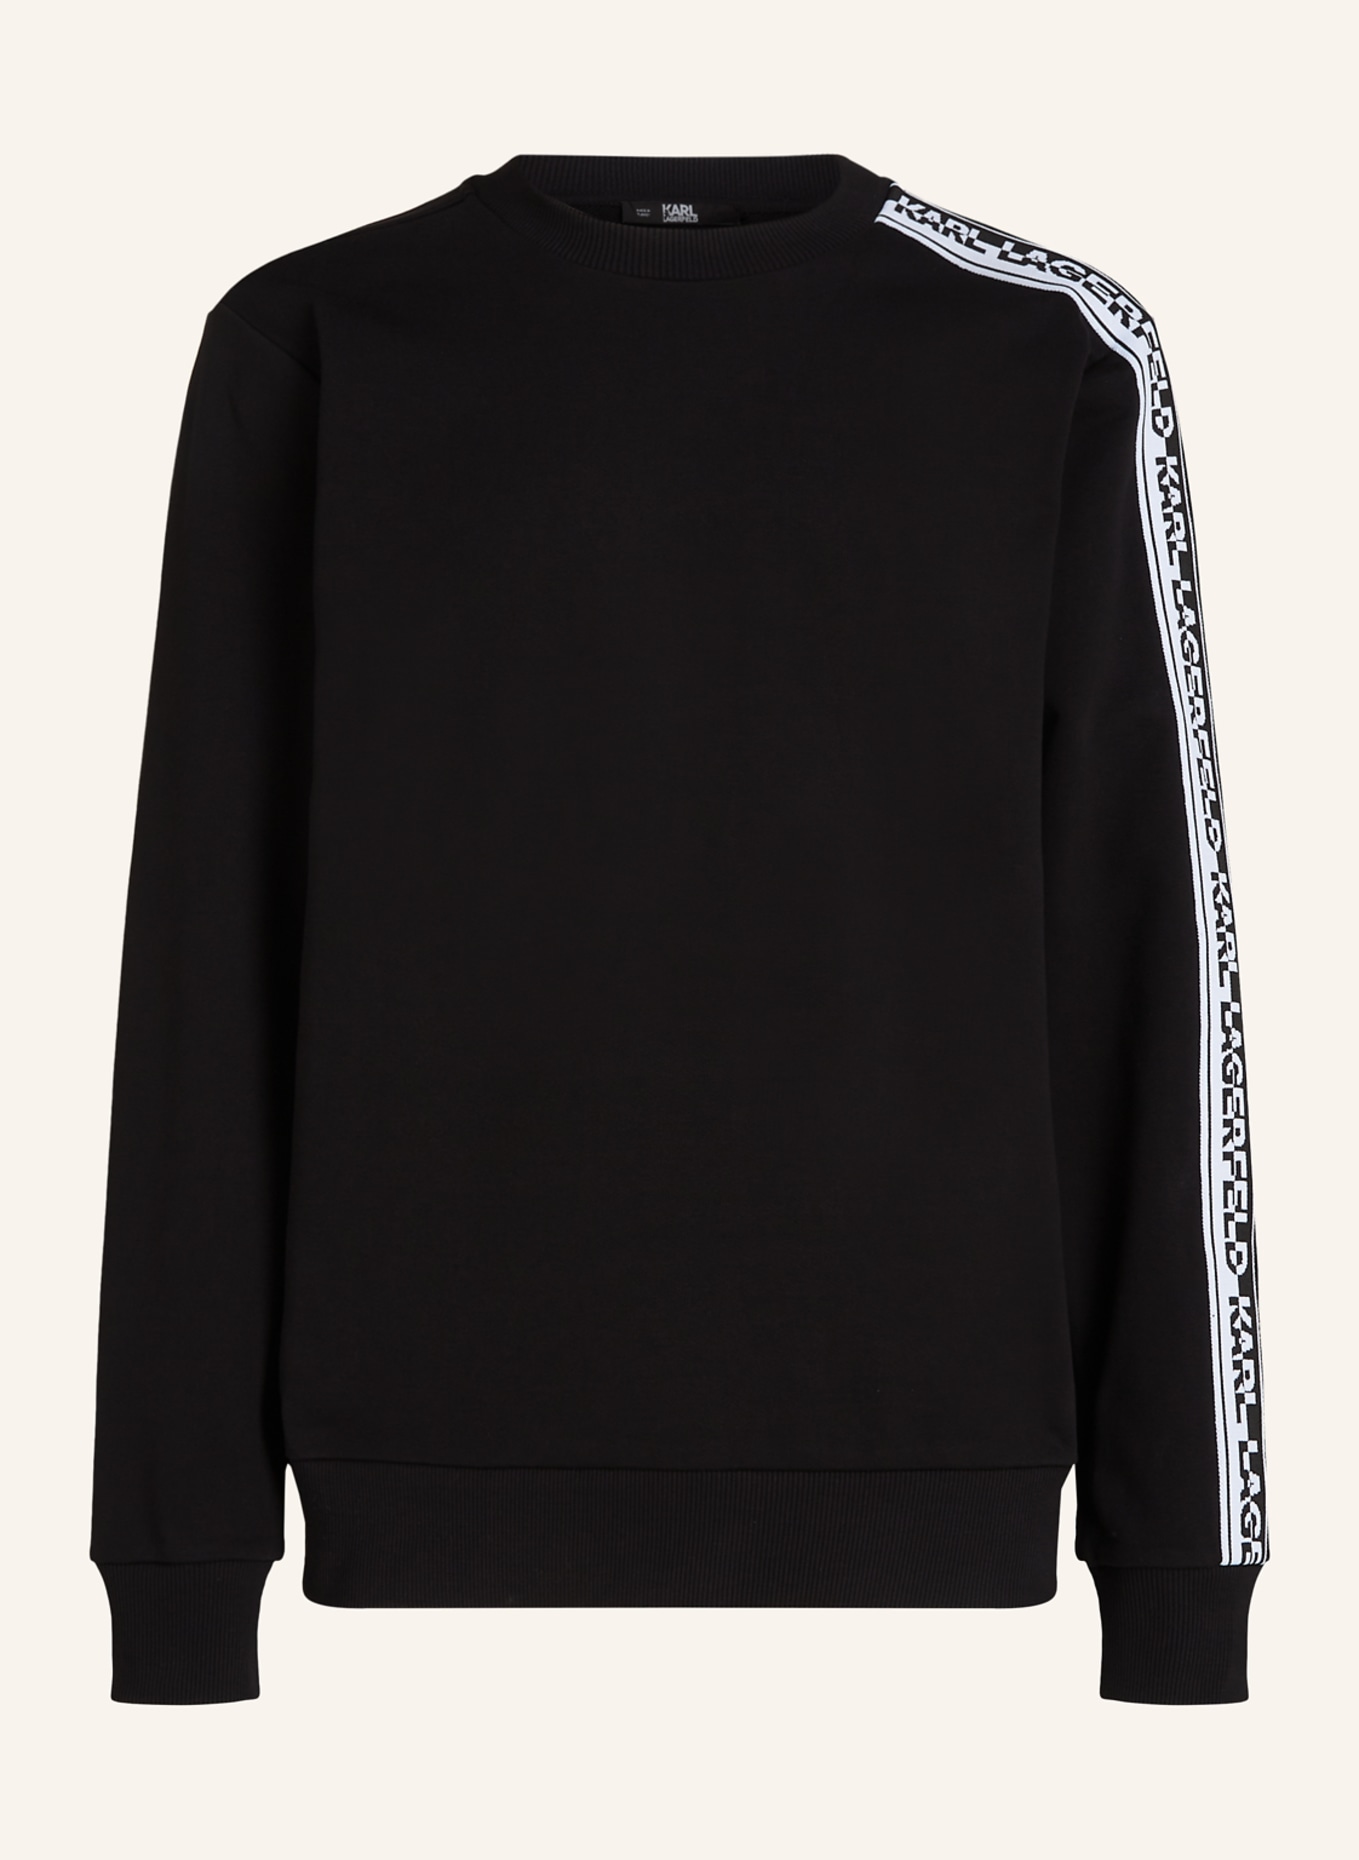 KARL LAGERFELD Sweatshirt, Farbe: SCHWARZ (Bild 1)